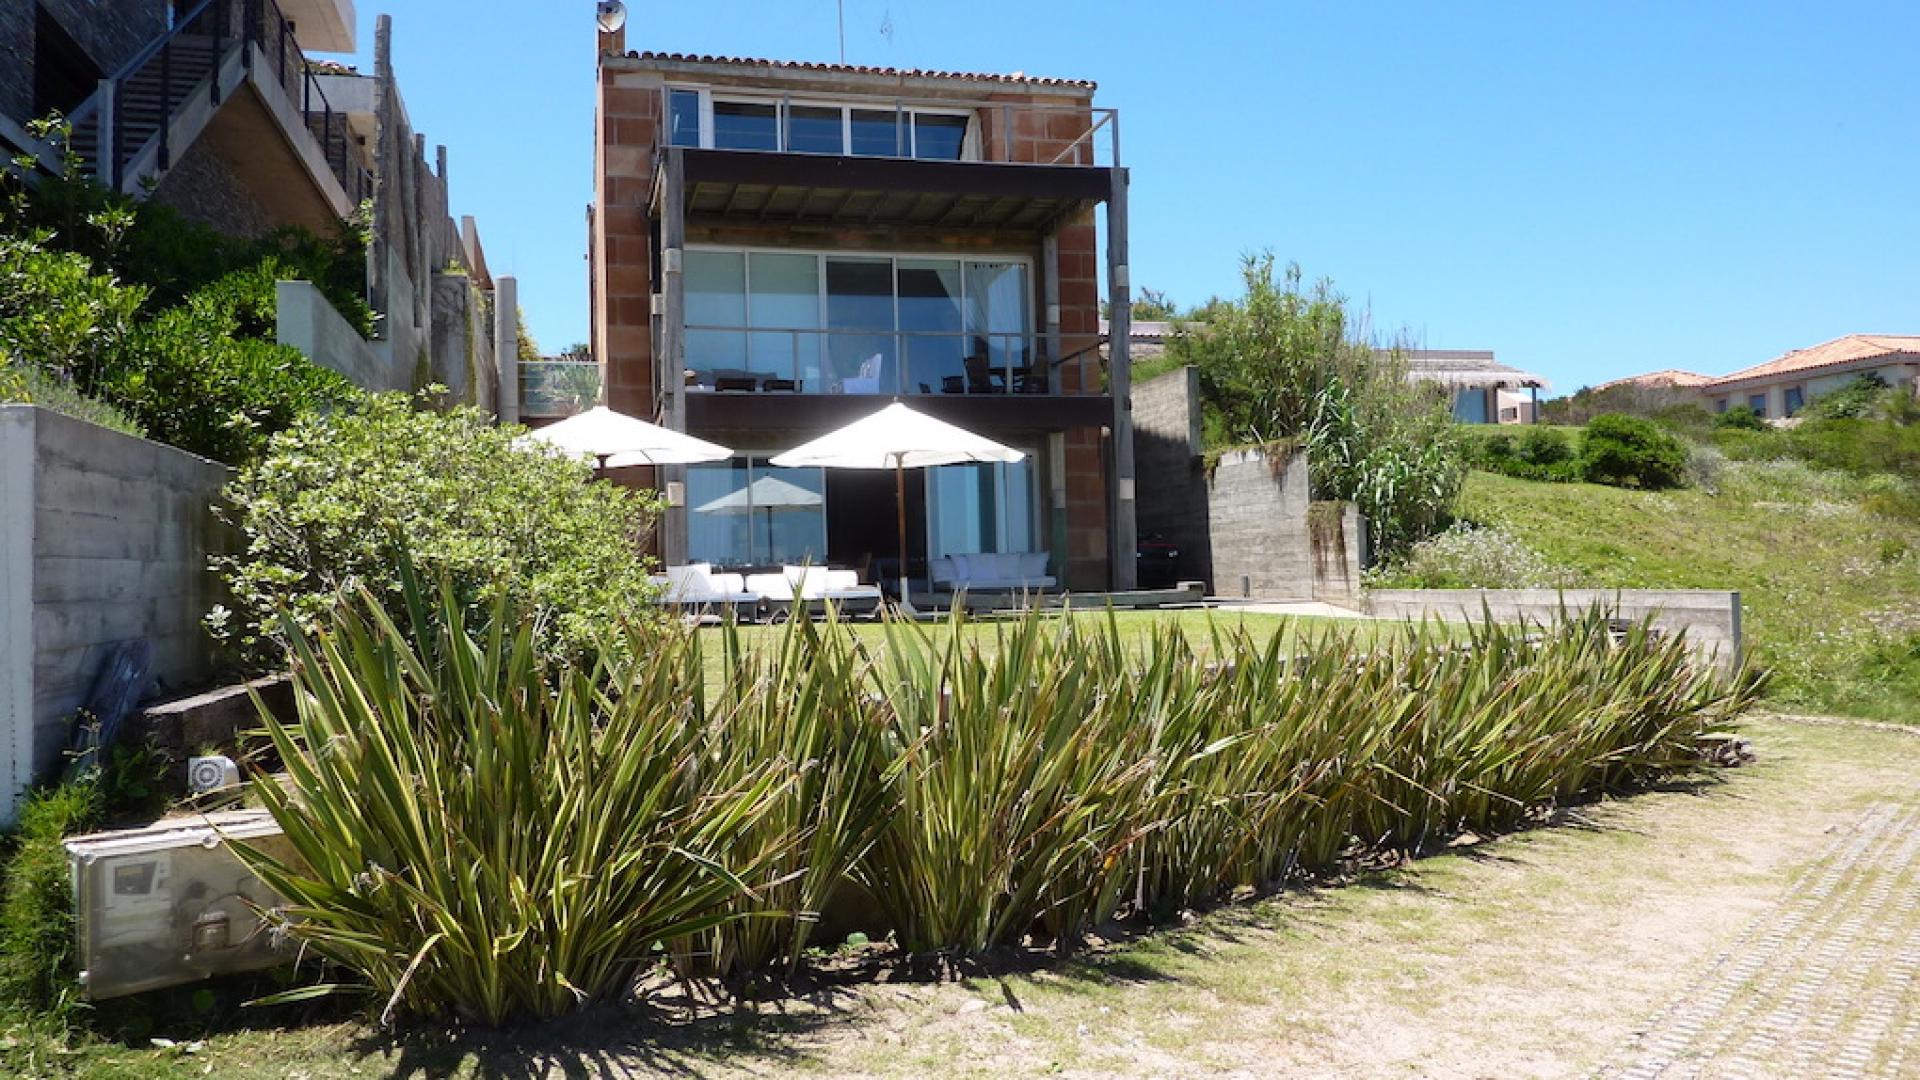 Chic Beachfront Villa  located in Jose Ignacio, Punta del Este, Uruguay, listed by Curiocity Villas.